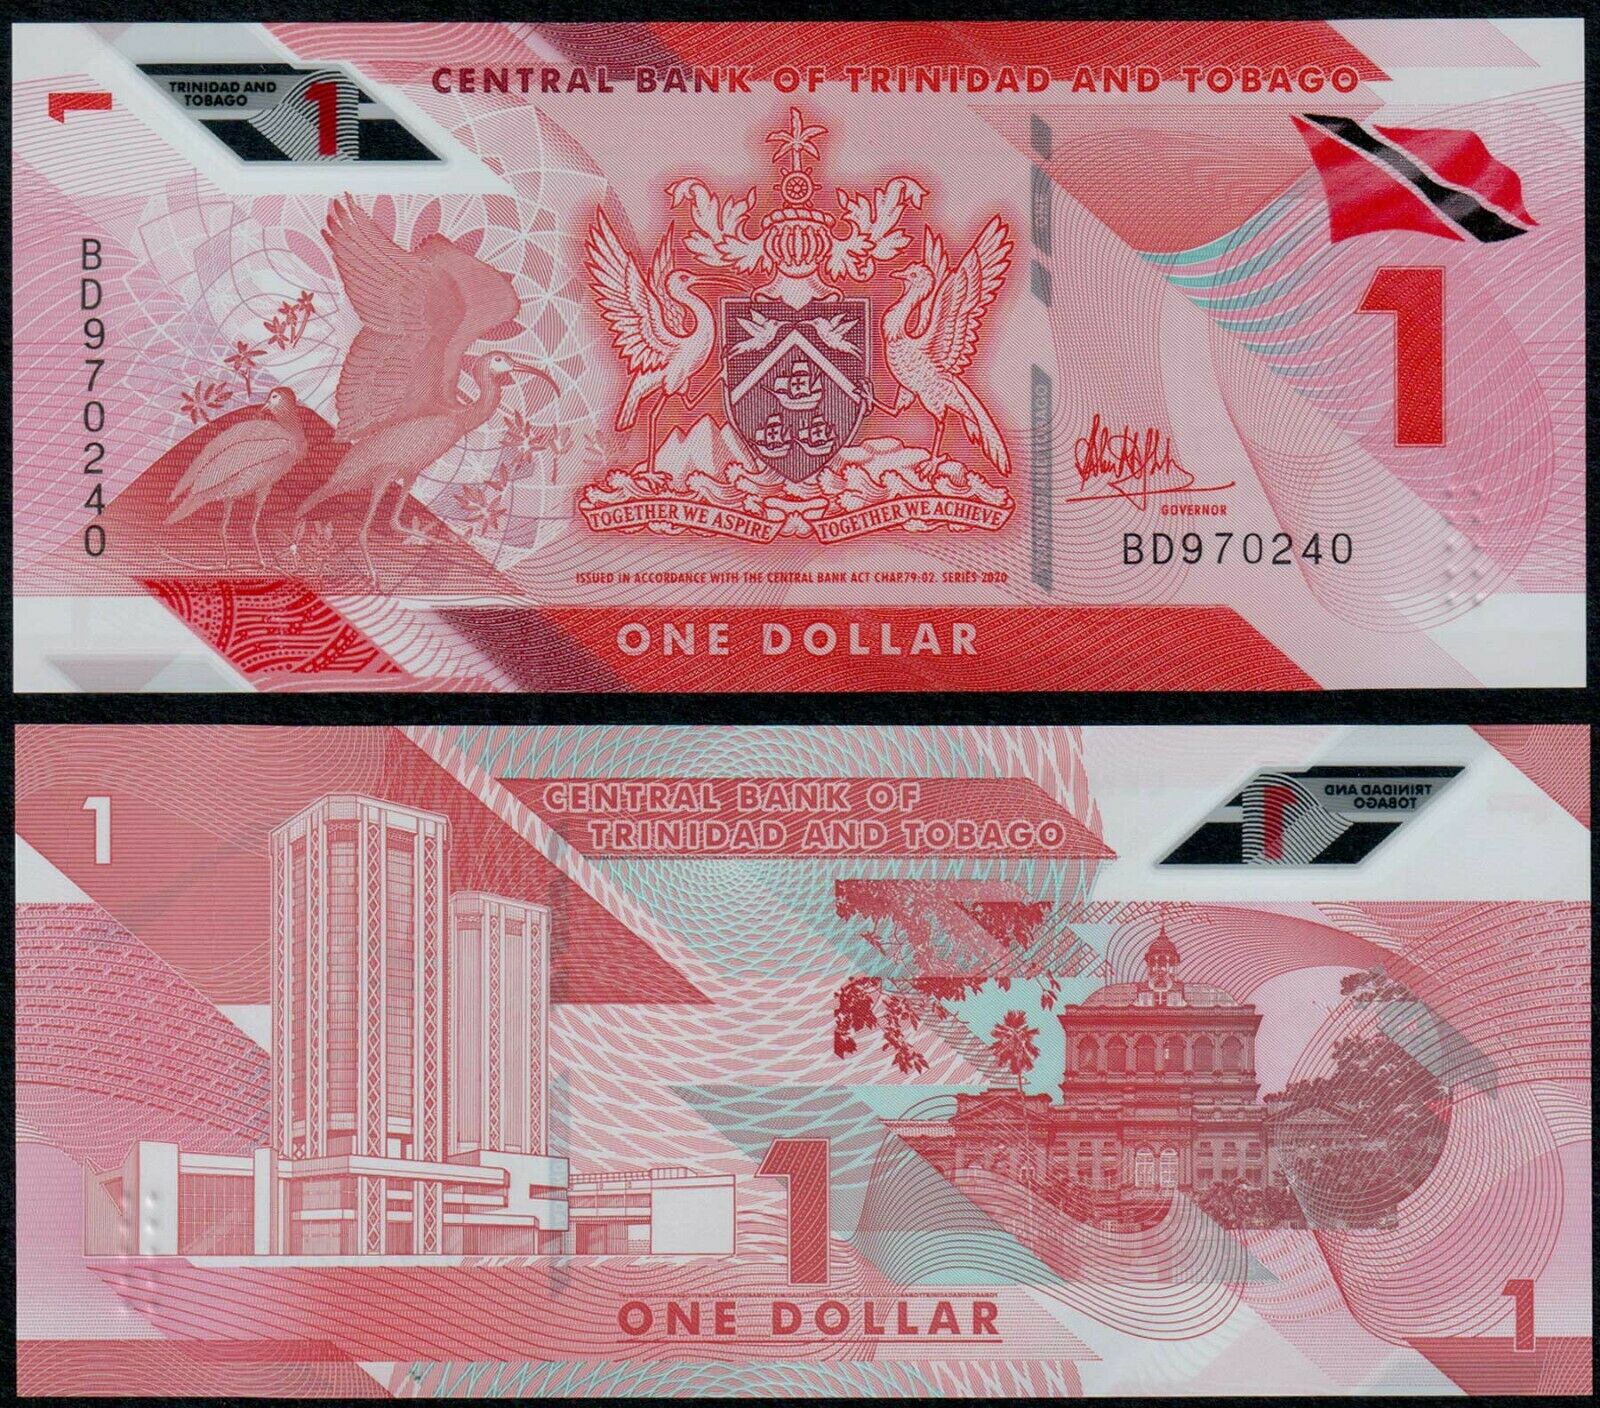 Tiền châu Mỹ, 1 dollar polymer Trinidad và Tobago phiên bản mới sưu tầm